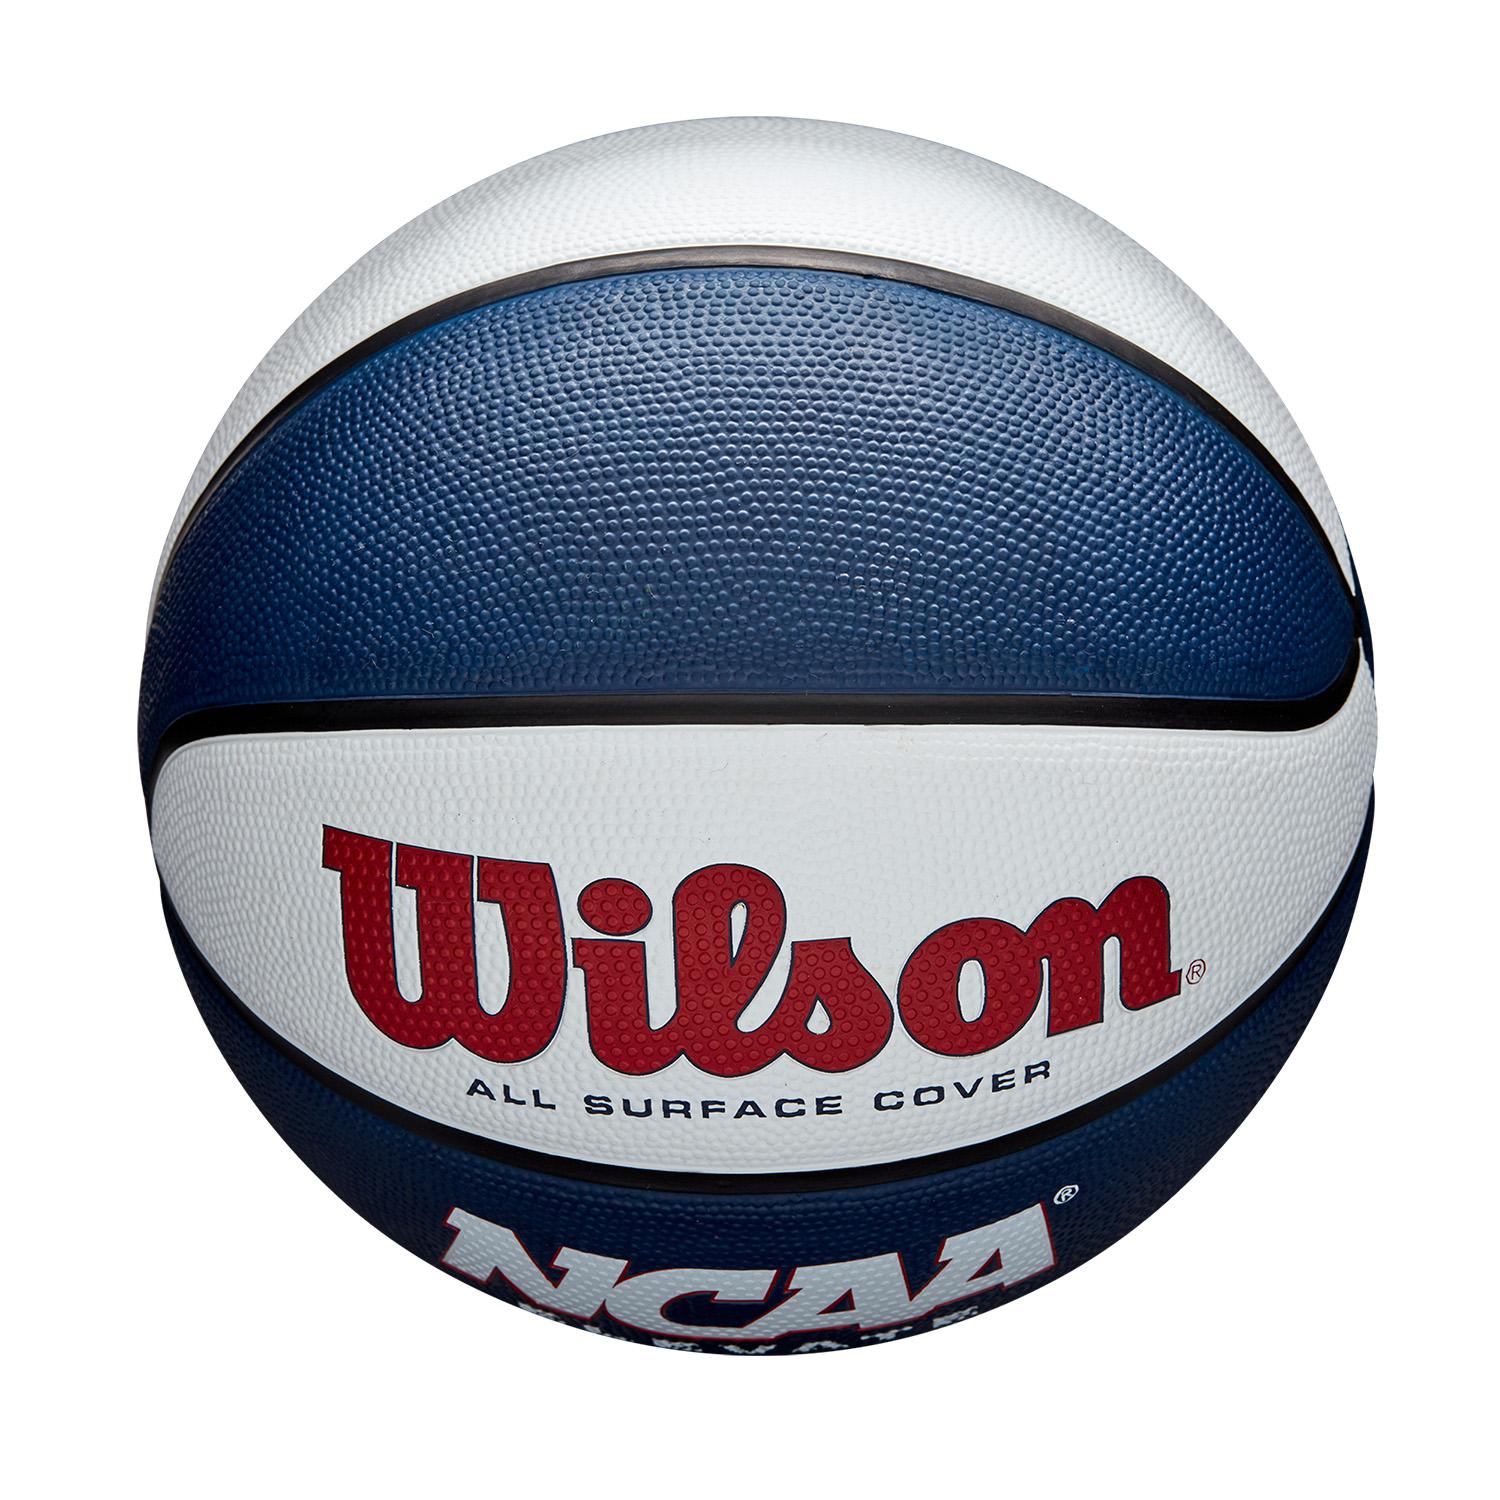 Balón NCAA Elevate Blanco/Azul